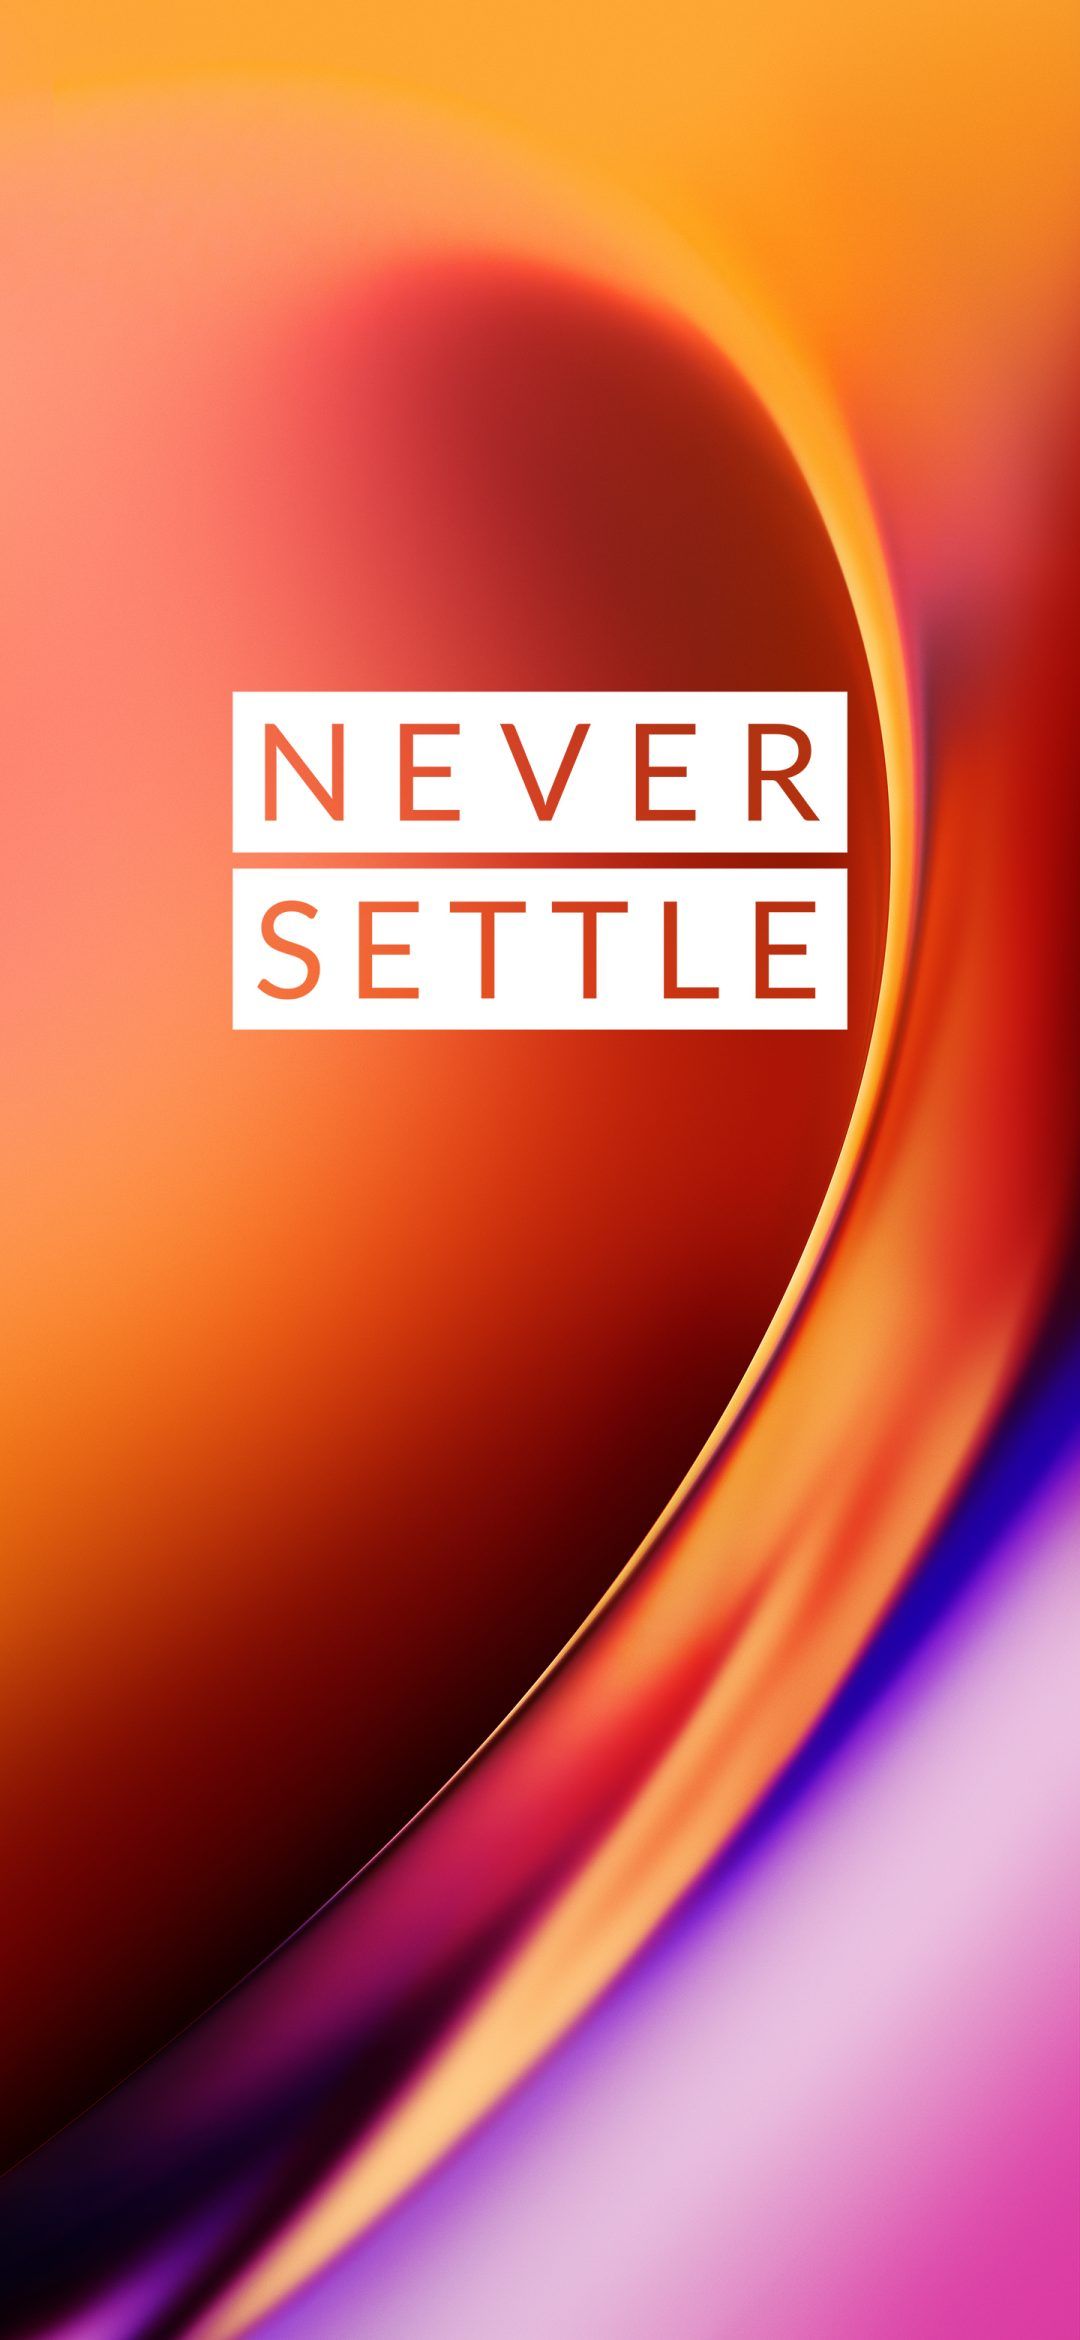 OnePlus 7T Wallpaper & Live Wallpaper 4K, Never Settle